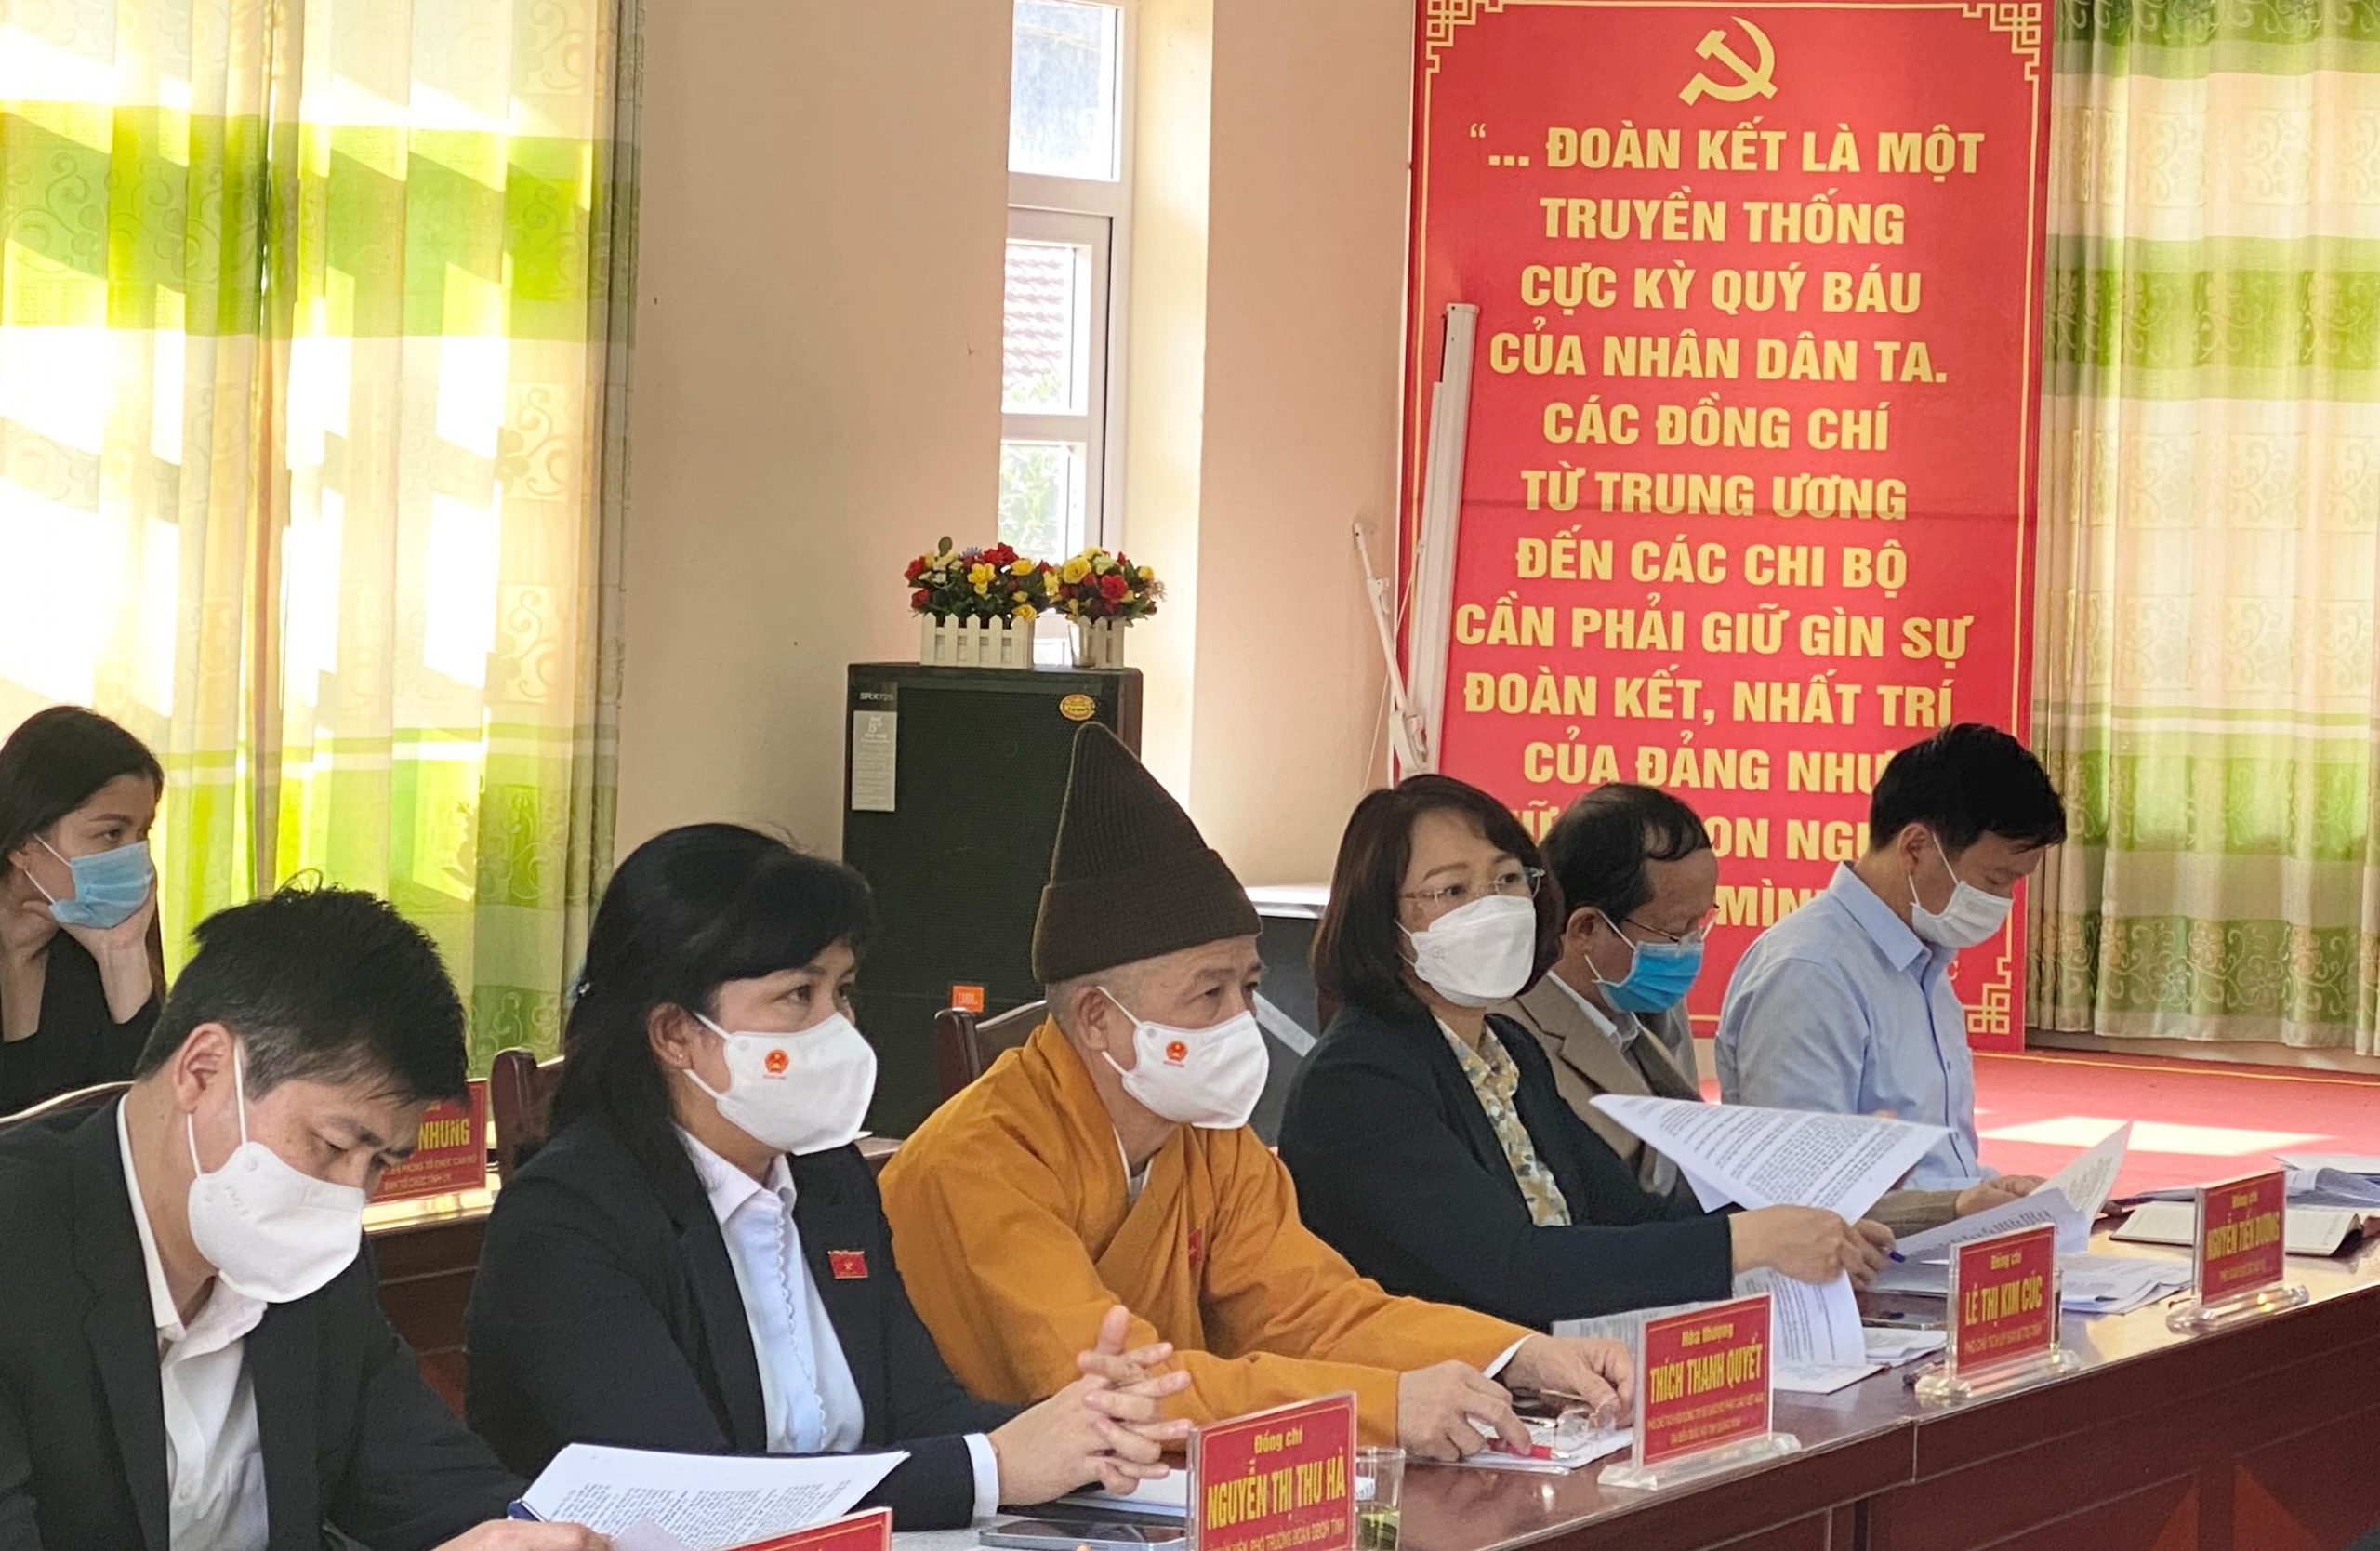 Hòa thượng Thích Thanh Quyết tham gia đoàn đại biểu Quốc hội giám sát tại Quảng Ninh